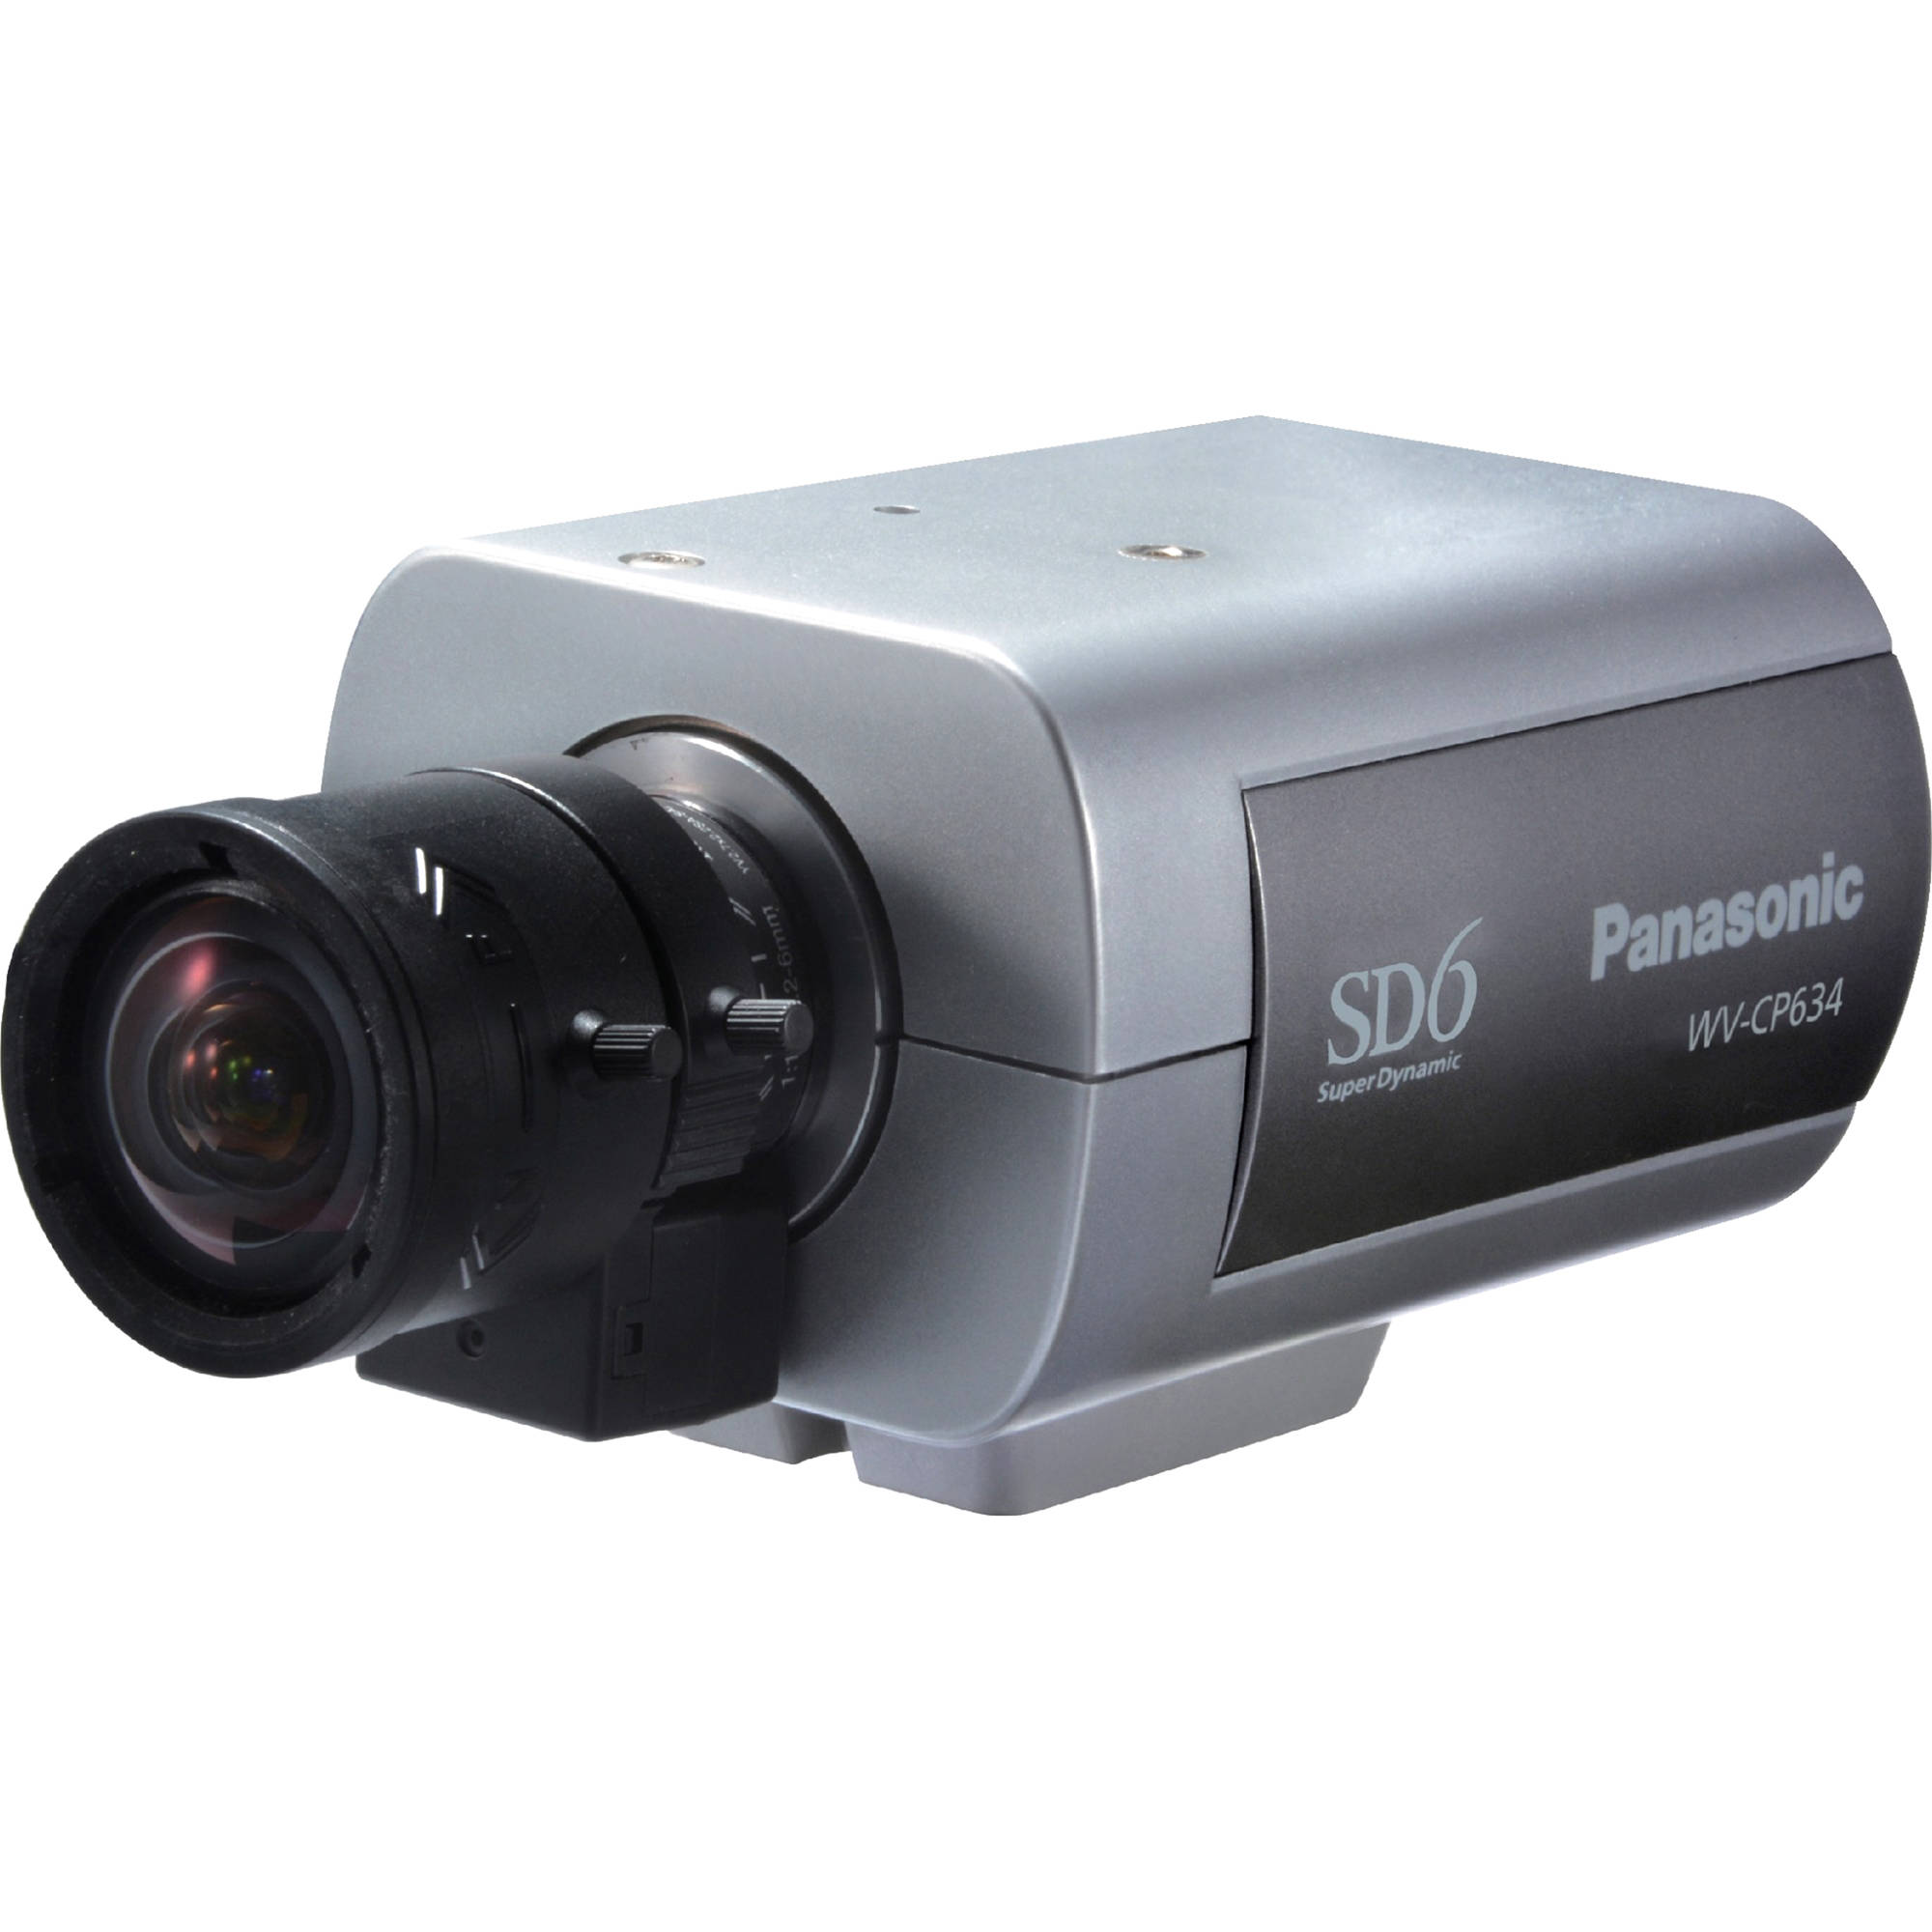 Цветная камера. Видеокамера Panasonic 3 CCD Camera. Камера видеонаблюдения Panasonic Panasonic cw380. Видеокамера Panasonic WV-x4171. Panasonic WV-sv850a/g.